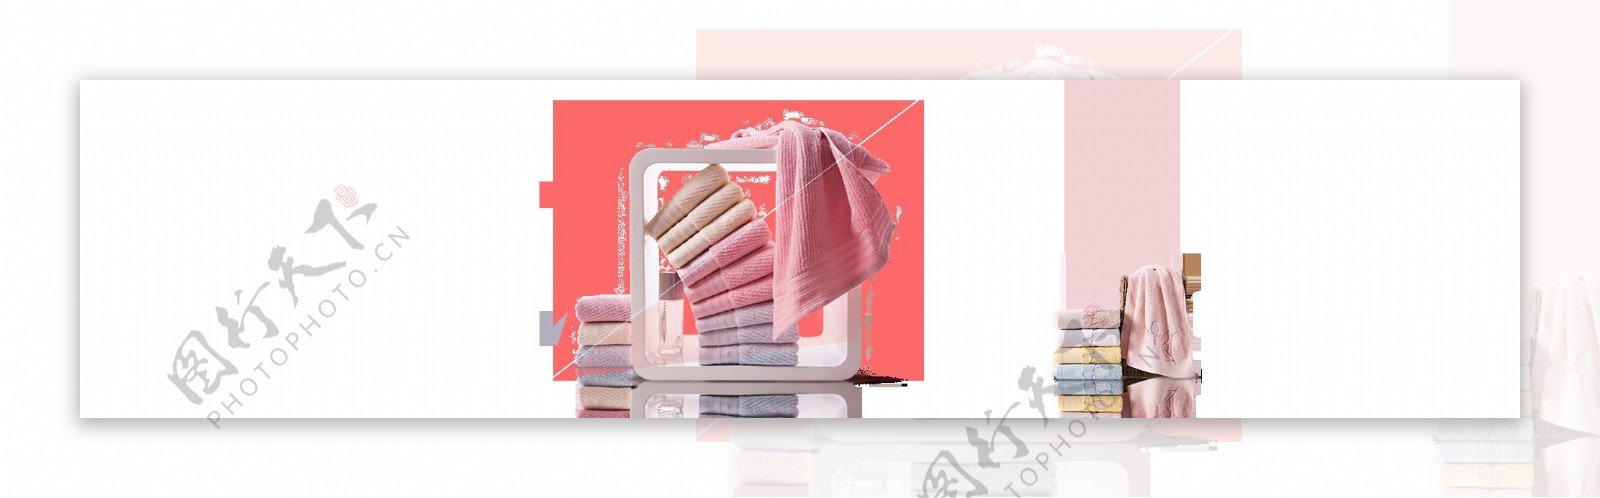 浪漫粉色浴巾元素